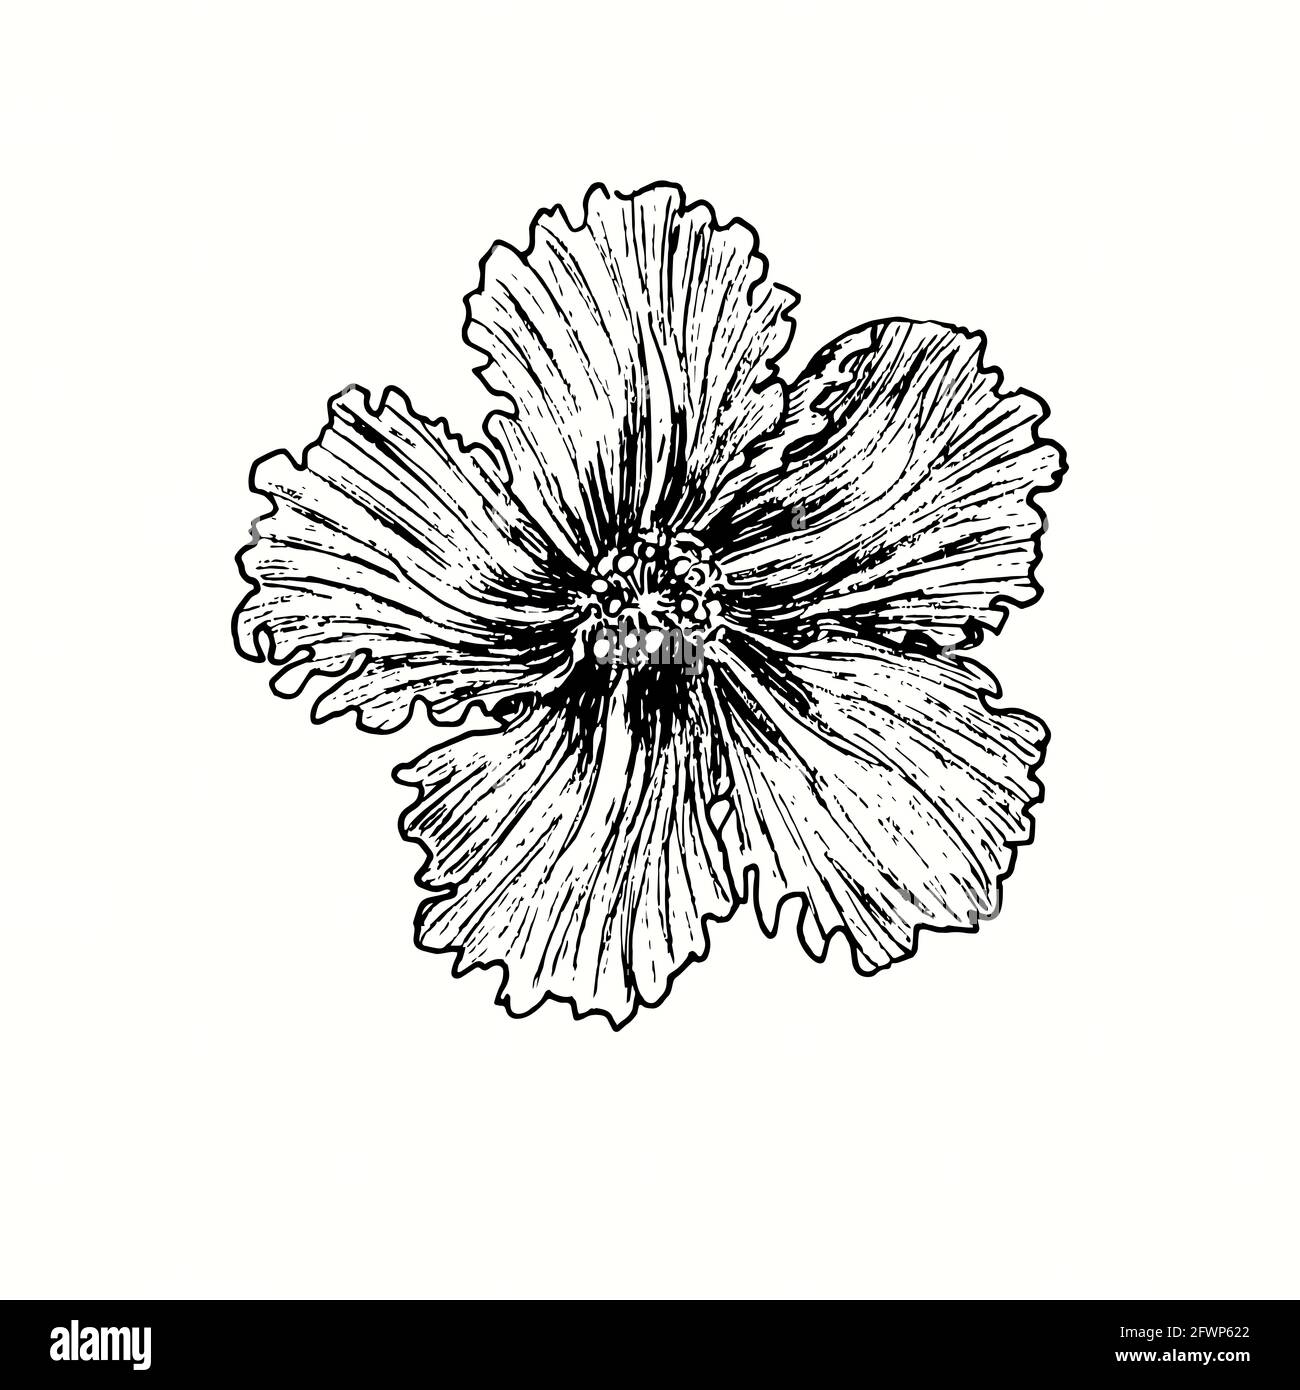 Vue sur le front de la fleur de Hibiskus. Dessin d'une boisée noire et blanche à l'encre. Banque D'Images